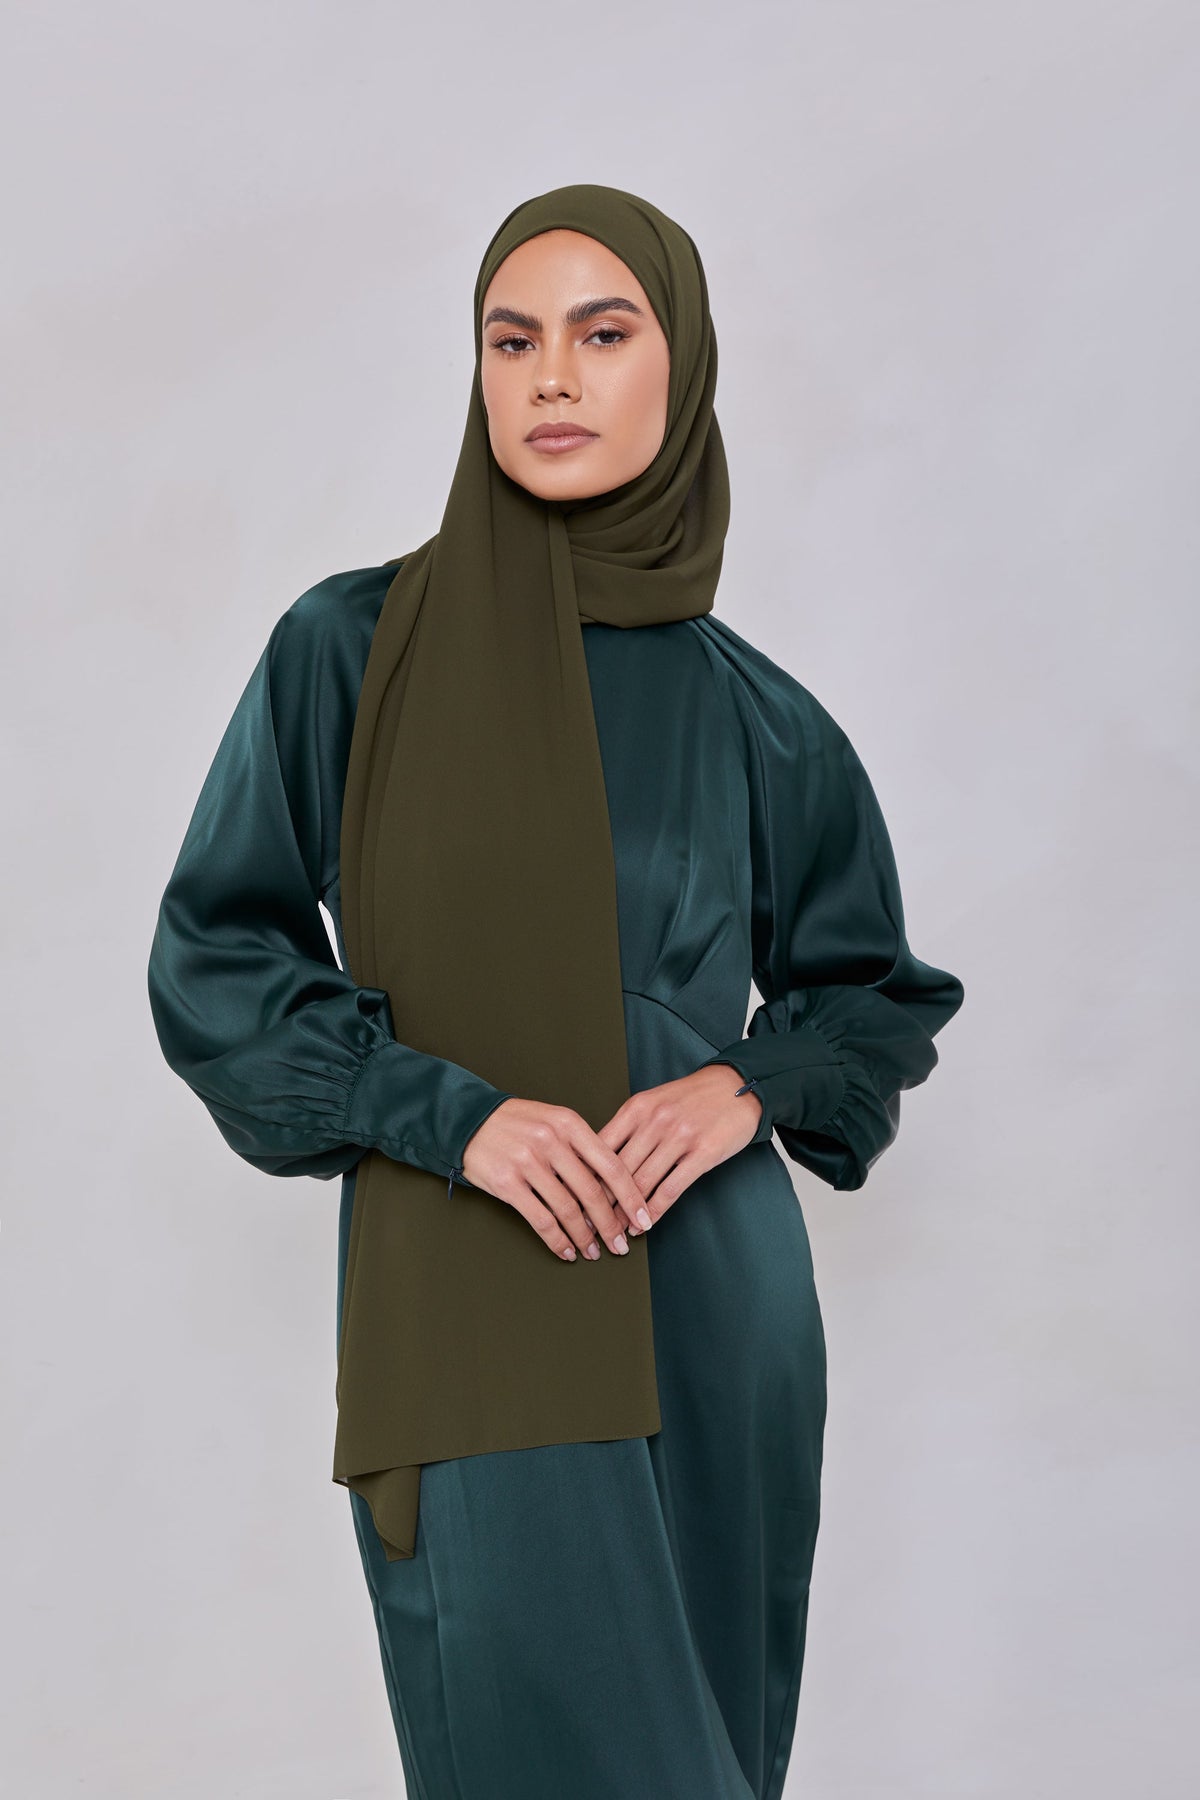 Essential Chiffon Hijab - Army Green Scarves & Shawls epschoolboard 